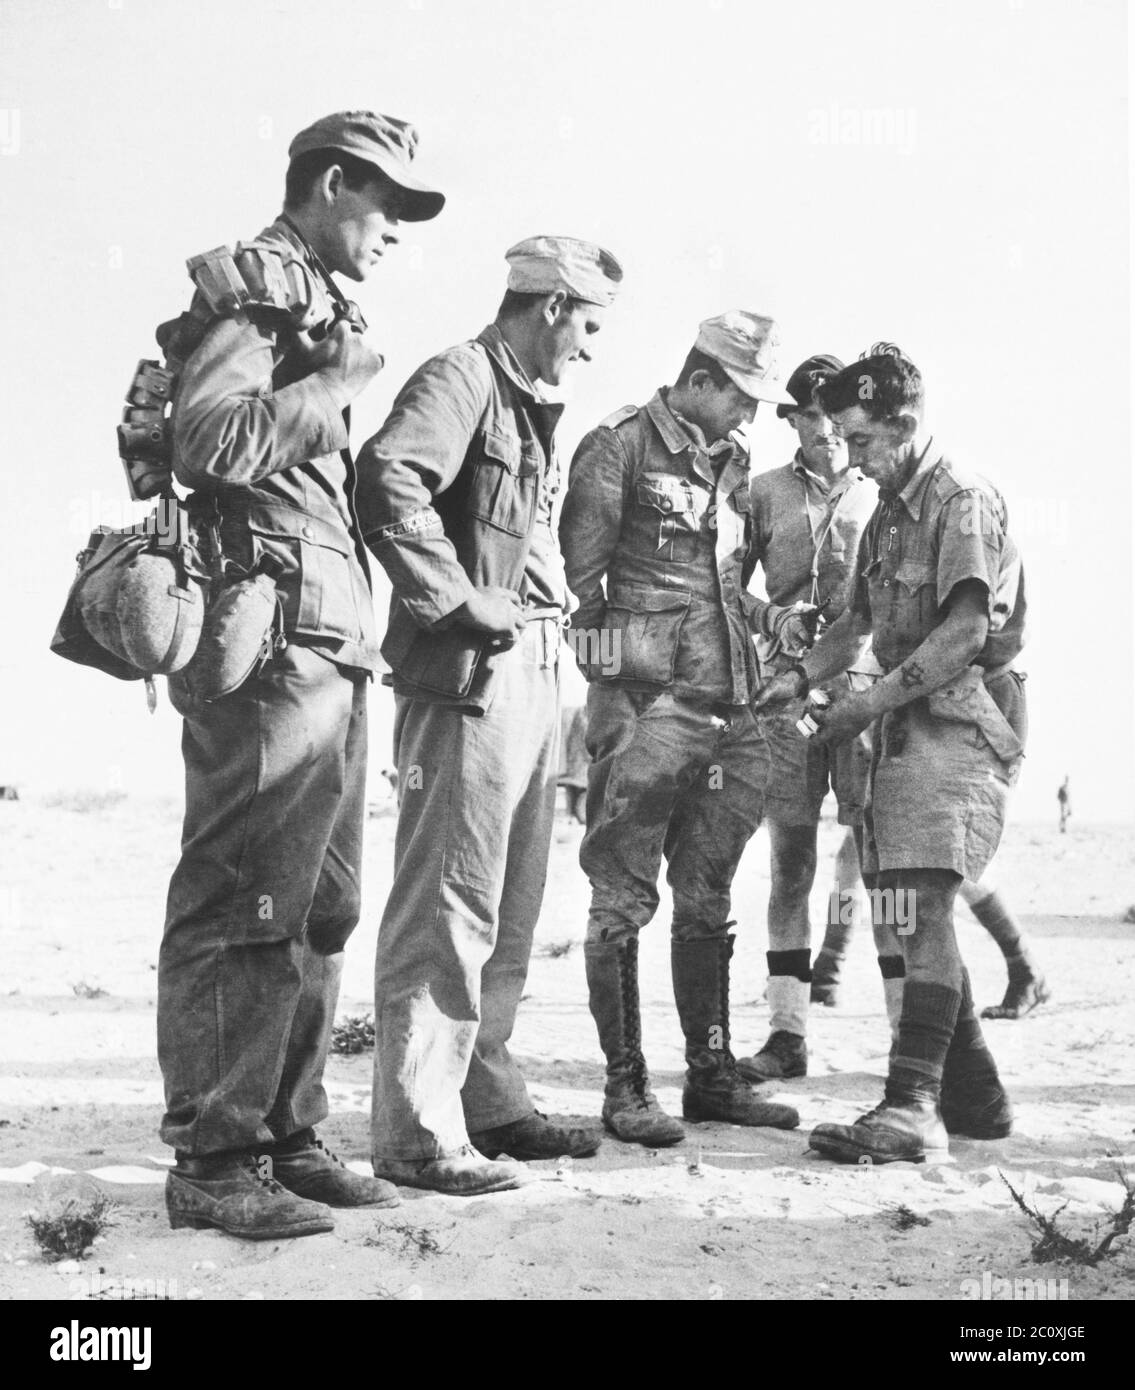 Prigionieri tedeschi, membri della German Crack Division, il 90esimo Div. Luce, che sono stati perquisiti dopo essere stati catturati a sud di El Alamein, Egitto, British fotografia ufficiale, 1942 Foto Stock